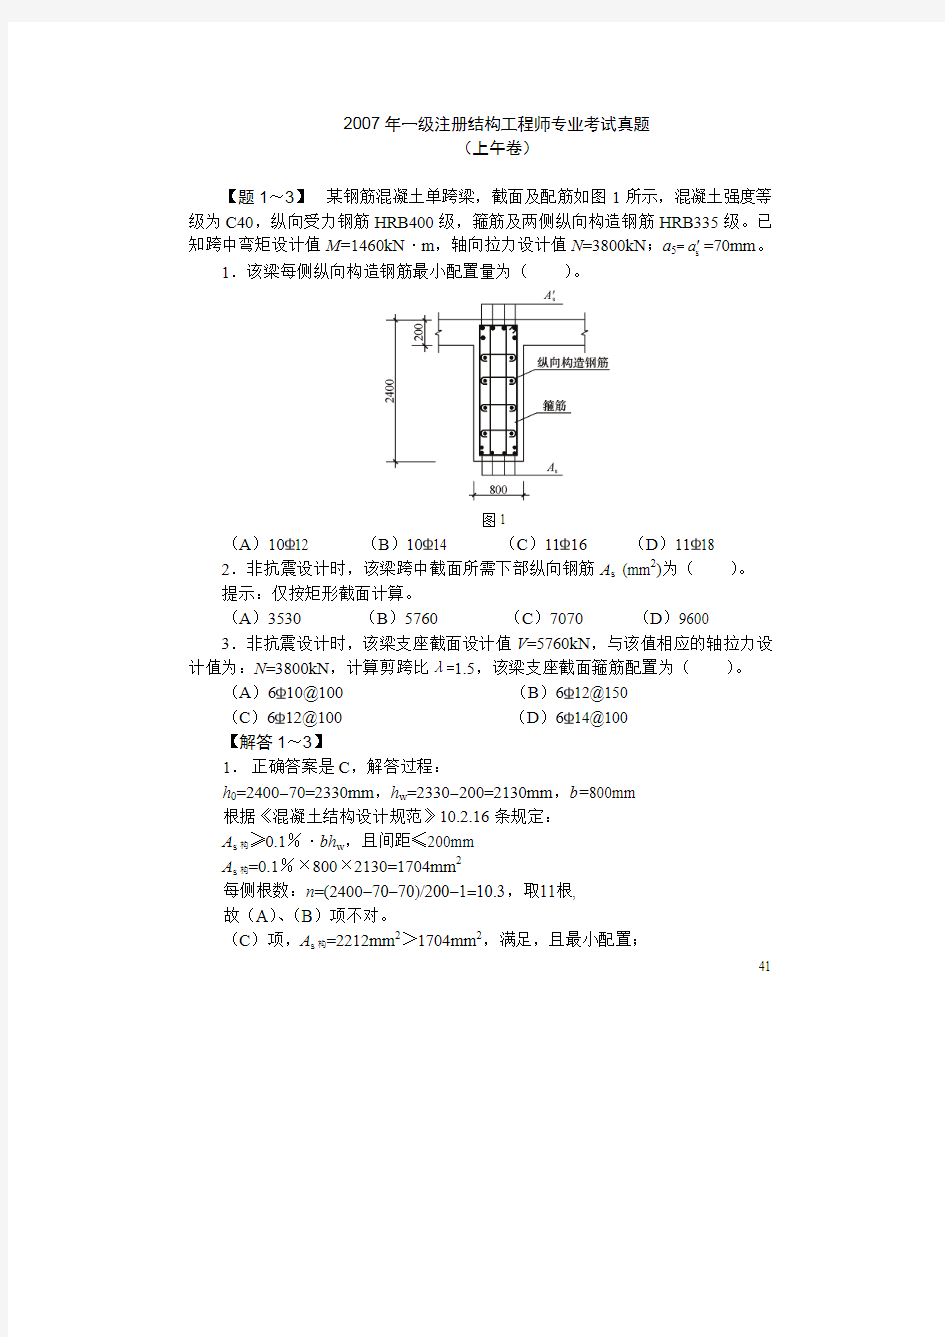 某年一级注册结构工程师专业考试真题(pdf 39页)